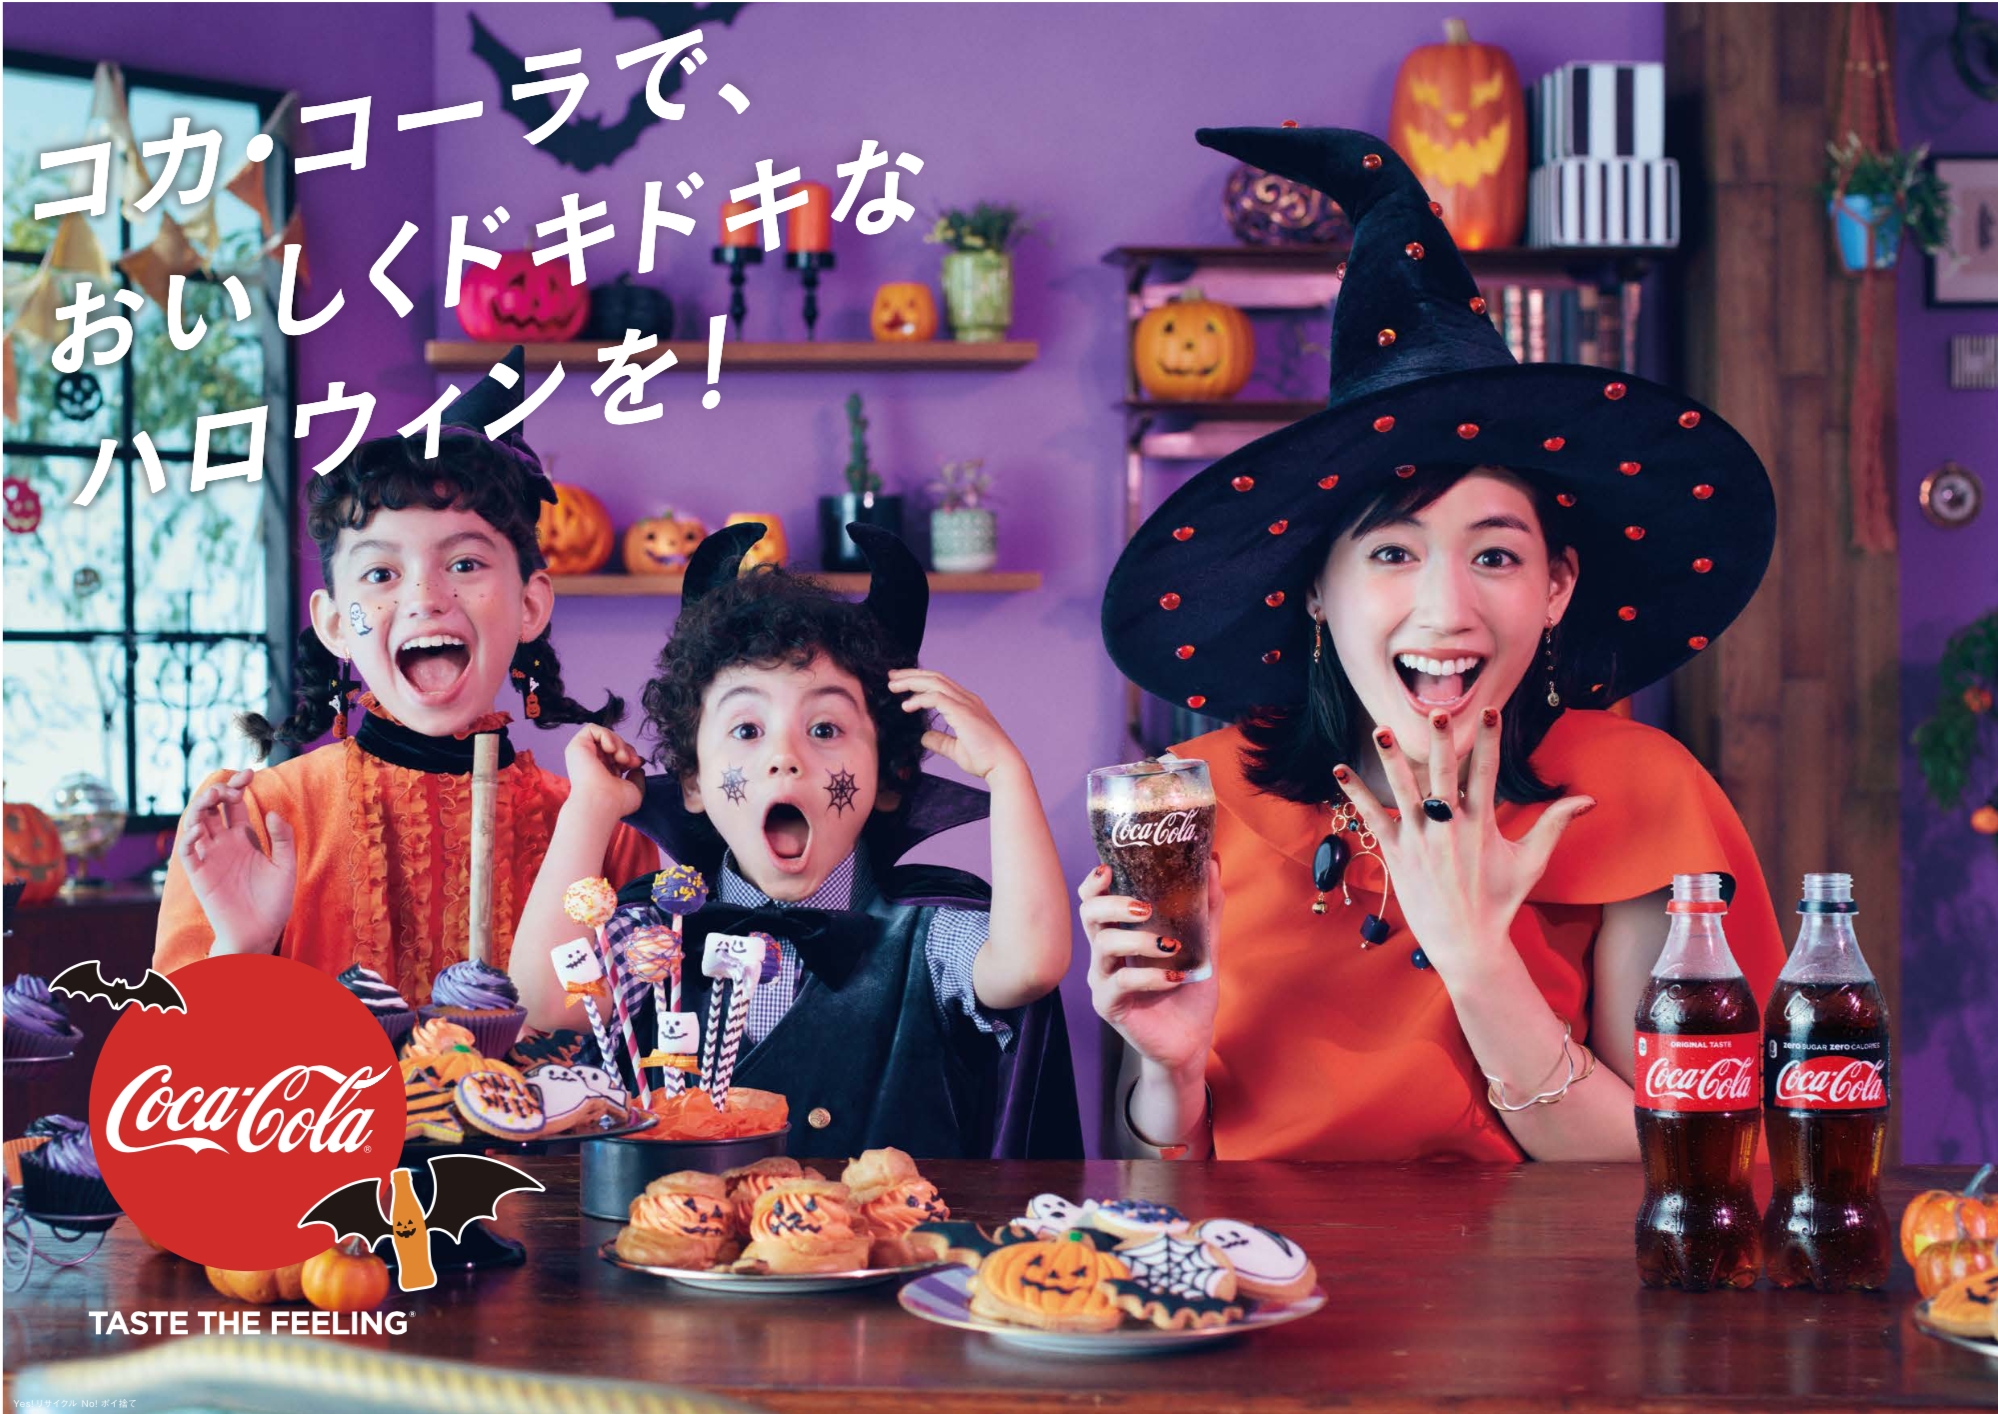 コカ コーラ ハロウィンキャンペーン18 9月10日 月 から全国でスタート 日本コカ コーラ株式会社のプレスリリース